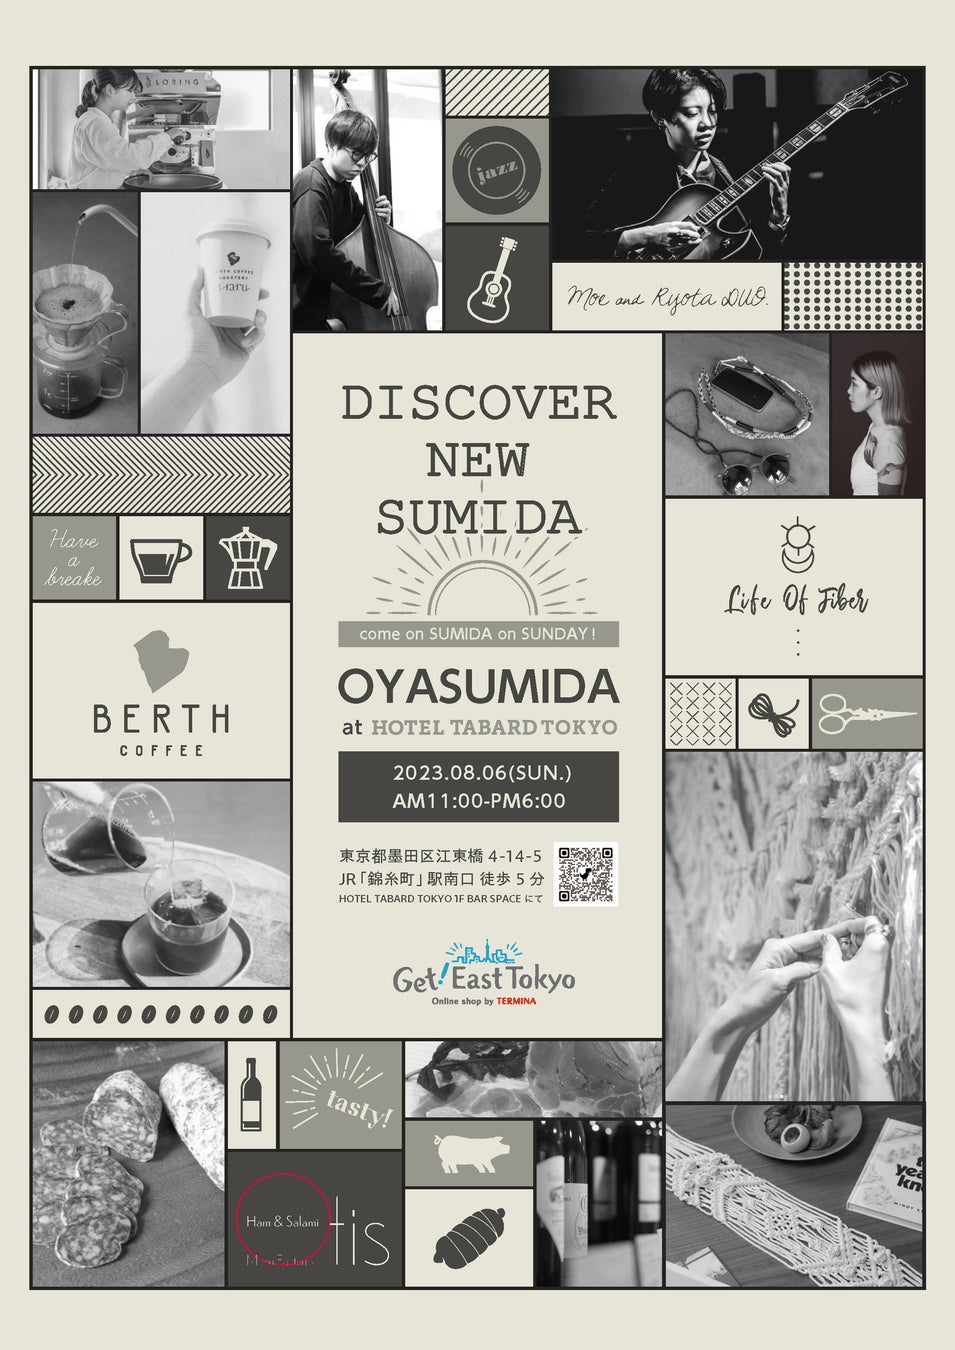 新しいすみだを体現するイベントが始まります。OYASUMIDA at HOTEL TABARD TOKYOのサブ画像1